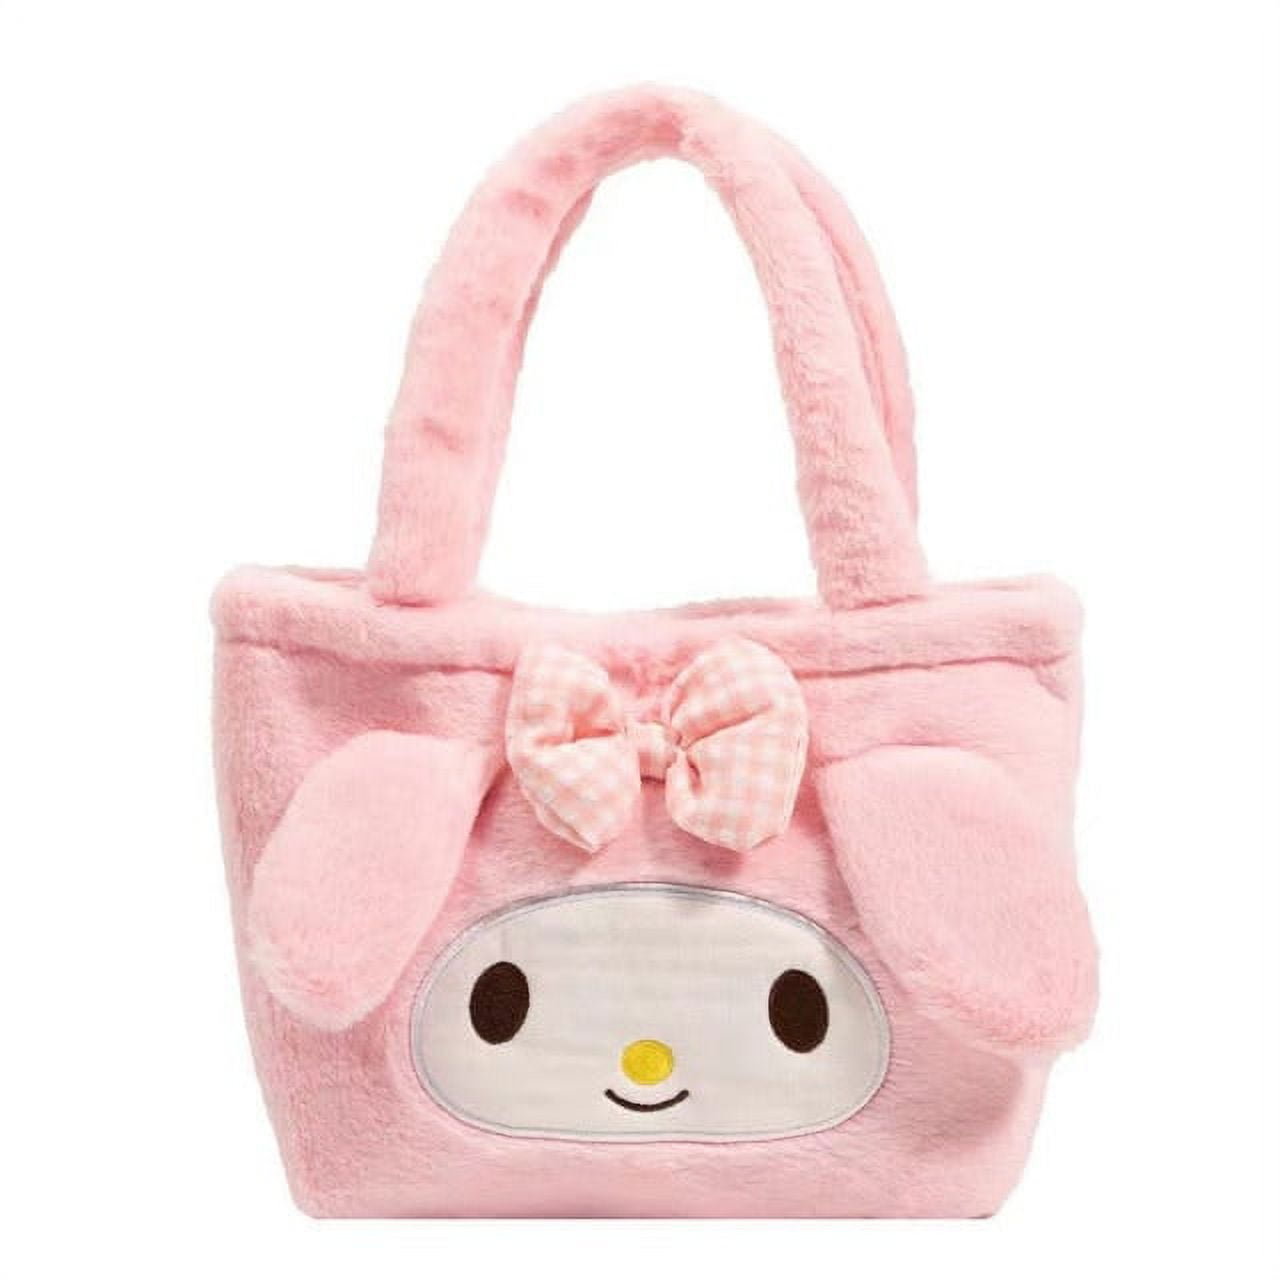 Hello Kitty Purse Handbags Sanrio Bags Cute Walet My Melody Pouch Kuromi Kawaii Purse C104 Cinnamoroll